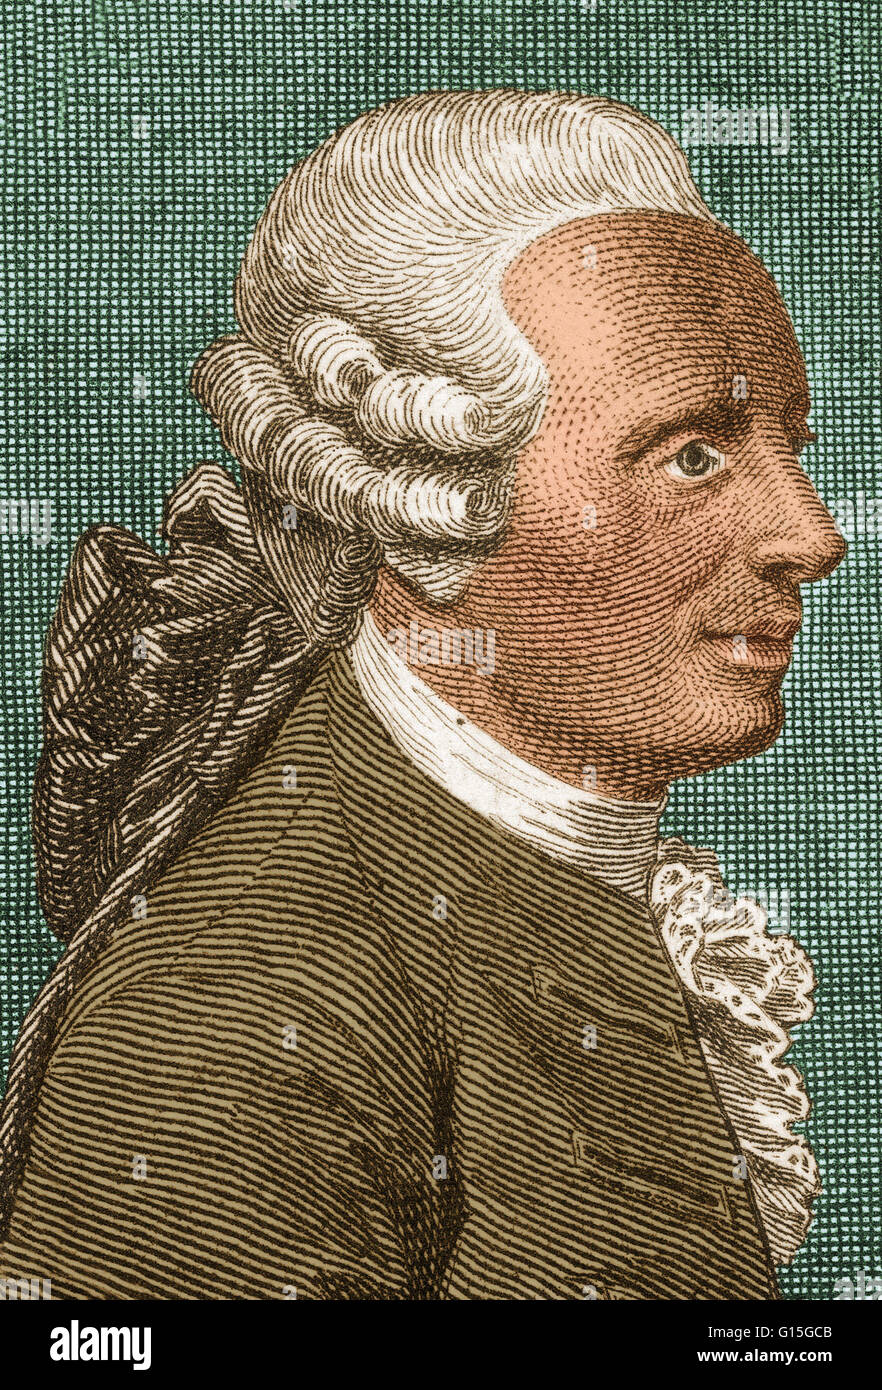 Jean-Baptiste Le Rond d'Alembert (novembre 16, 1717 - 29 ottobre 1783) era un matematico francese, mechanician, fisico, filosofo, teorico musicale e co-editor (per la matematica e la scienza) con Denis Diderot dell'Encyclopédie. D'Alembert formul Foto Stock